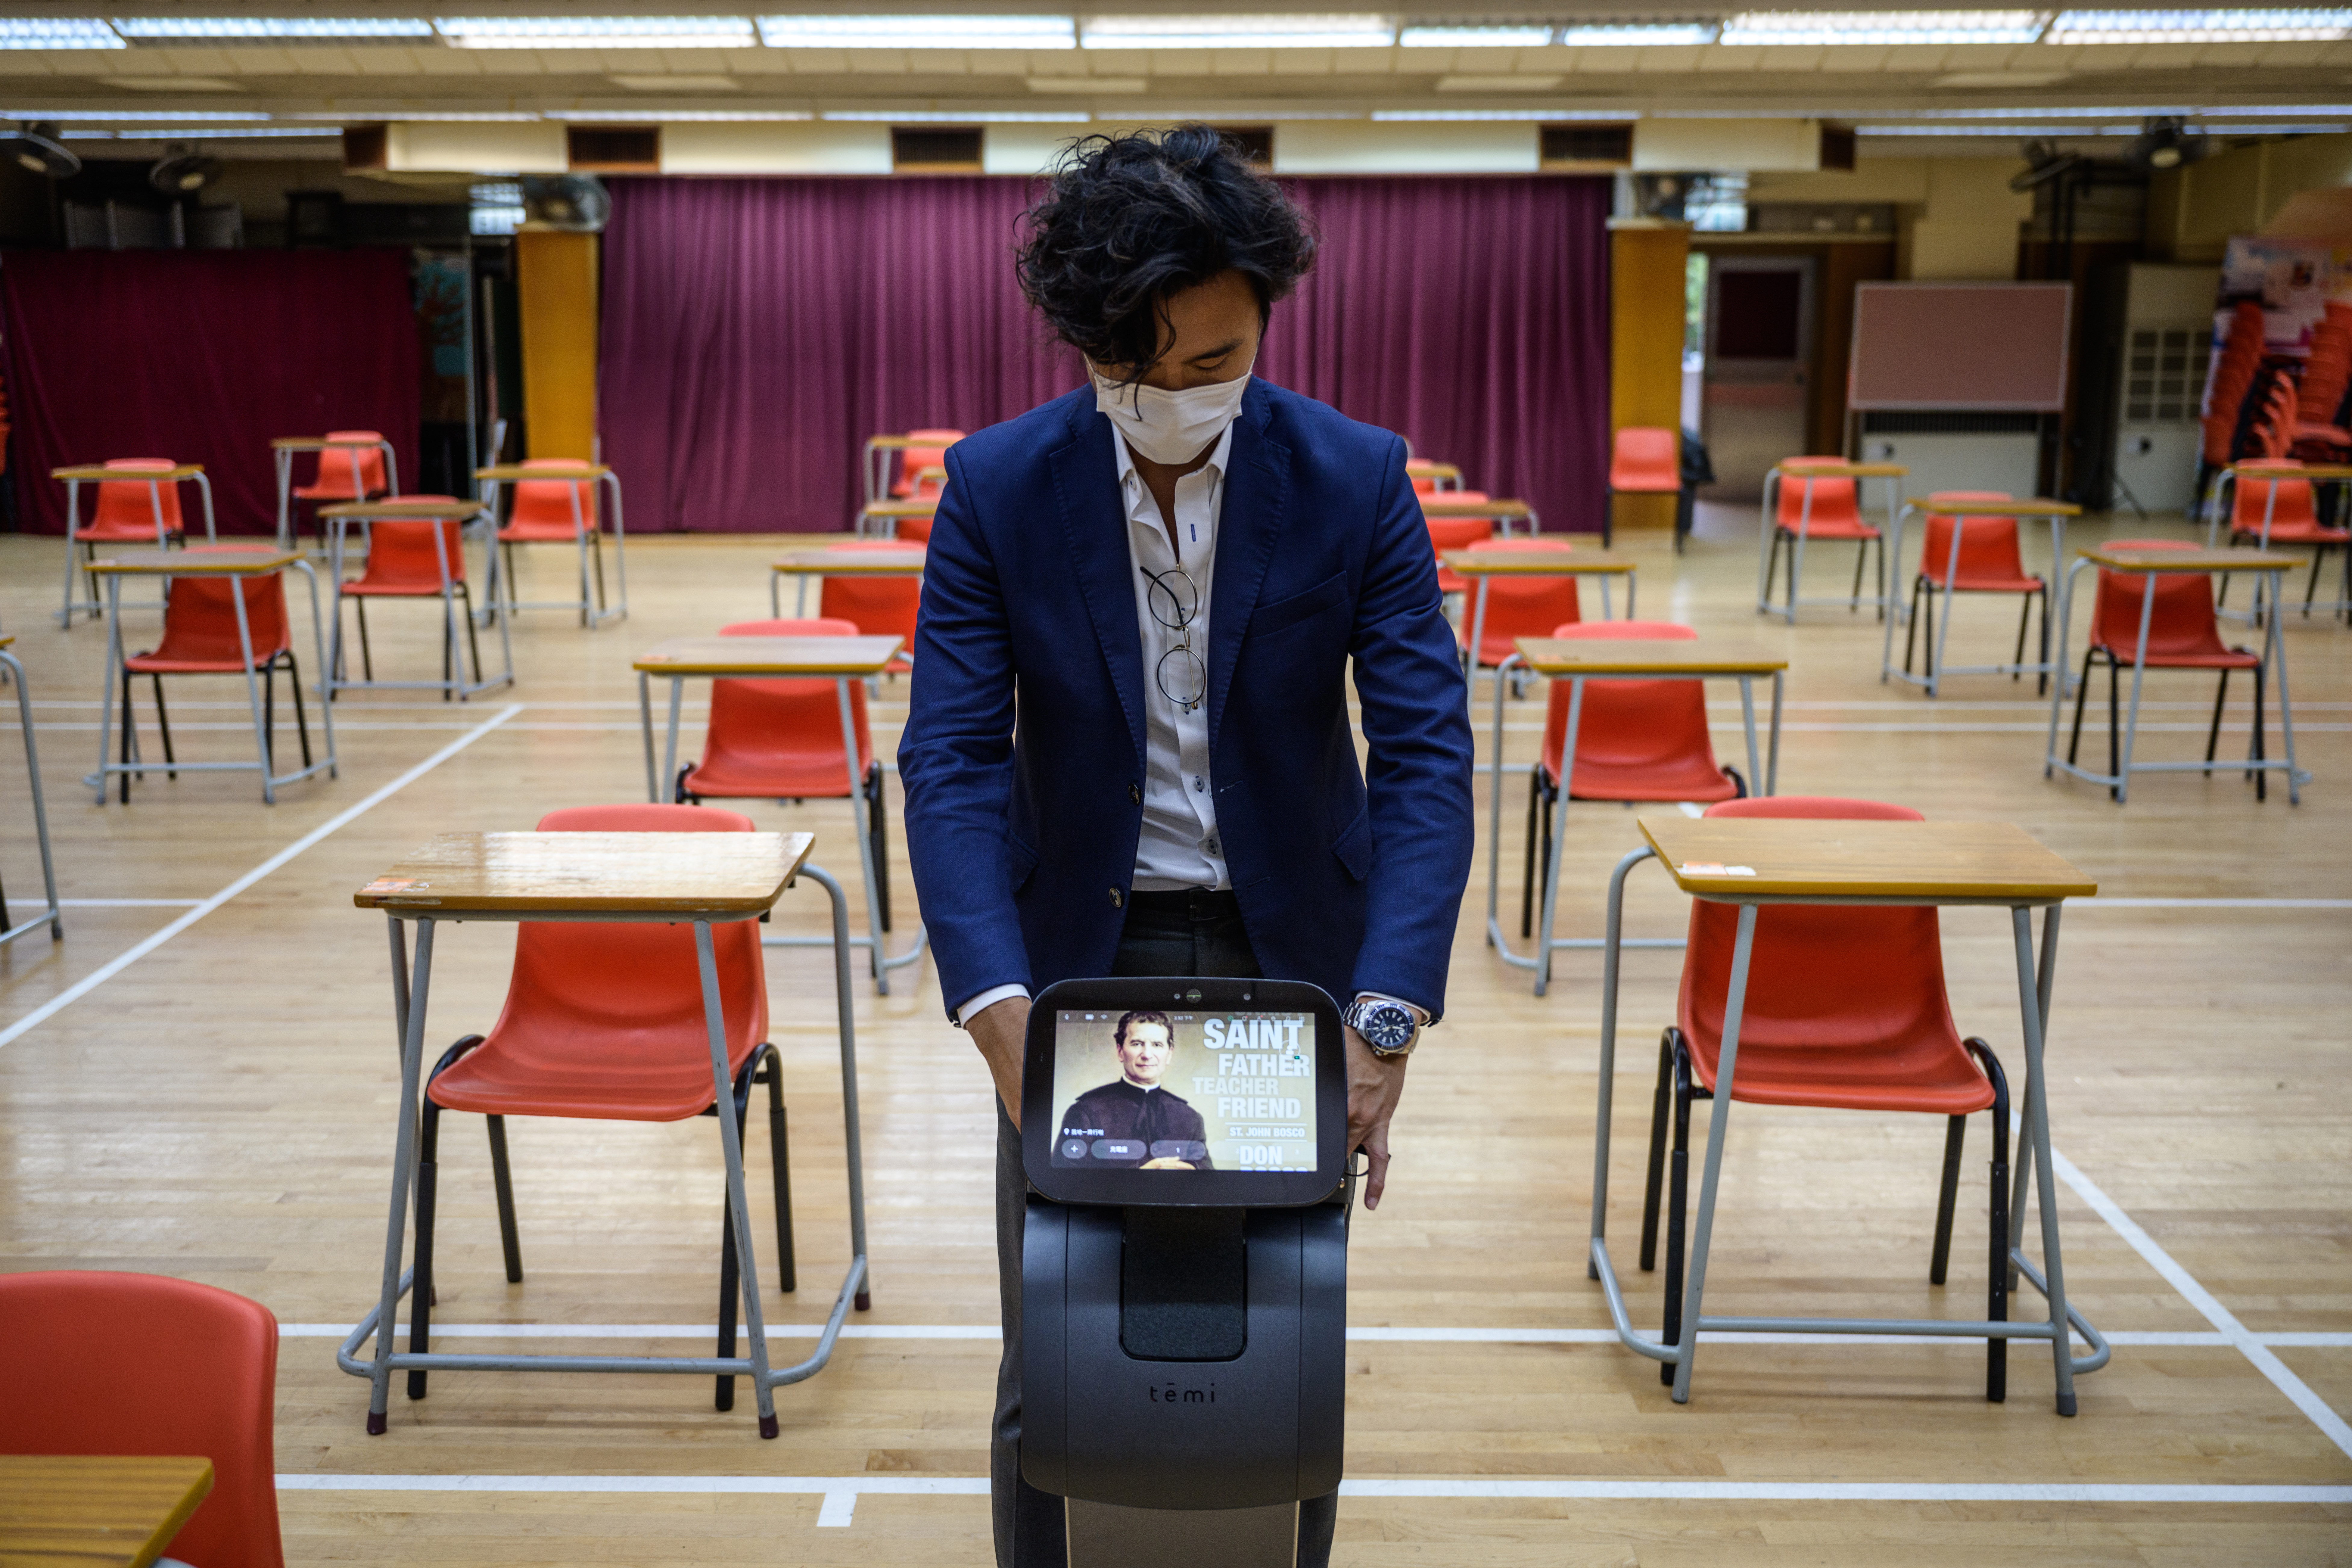 Egy hongkongi iskolában a Temi nevű robot osztja a diákoknak a kézfertőtlenítőt, segít fertőtleníteni az asztalokat és a székeket és még kedves szavakkal bátorítja is a diákokat